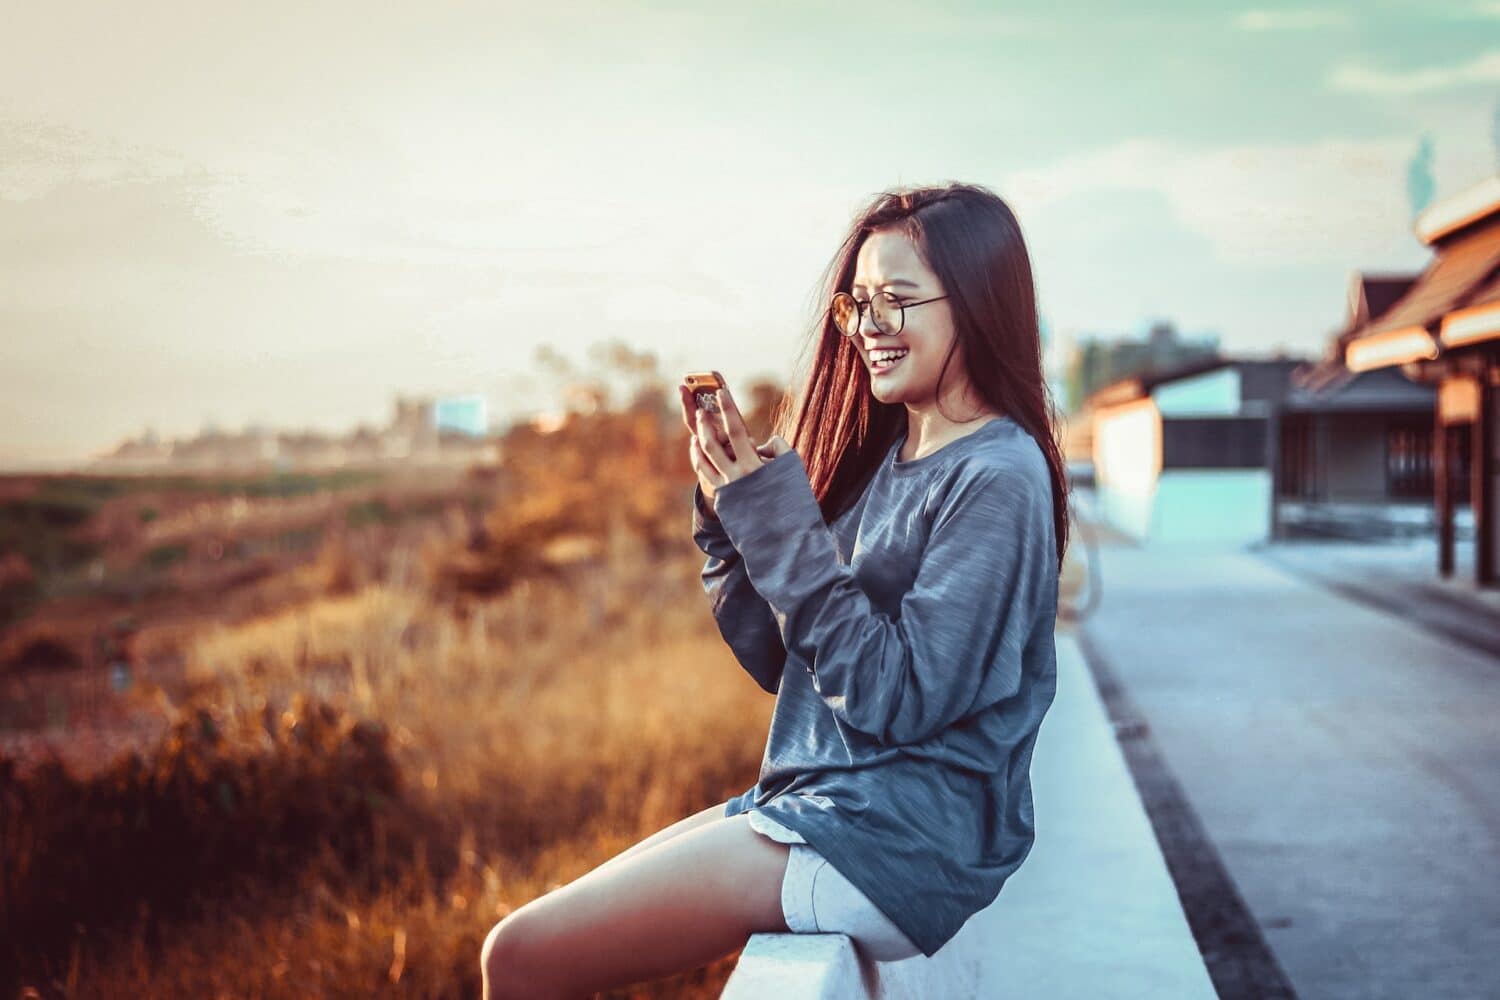 Mulher segurando um celular olhando para ele e sorrindo, com paisagem atrás. Ela está usando short jeans e blusa de manga longa cinza, imagem para ilustrar o post chip de celular Laos